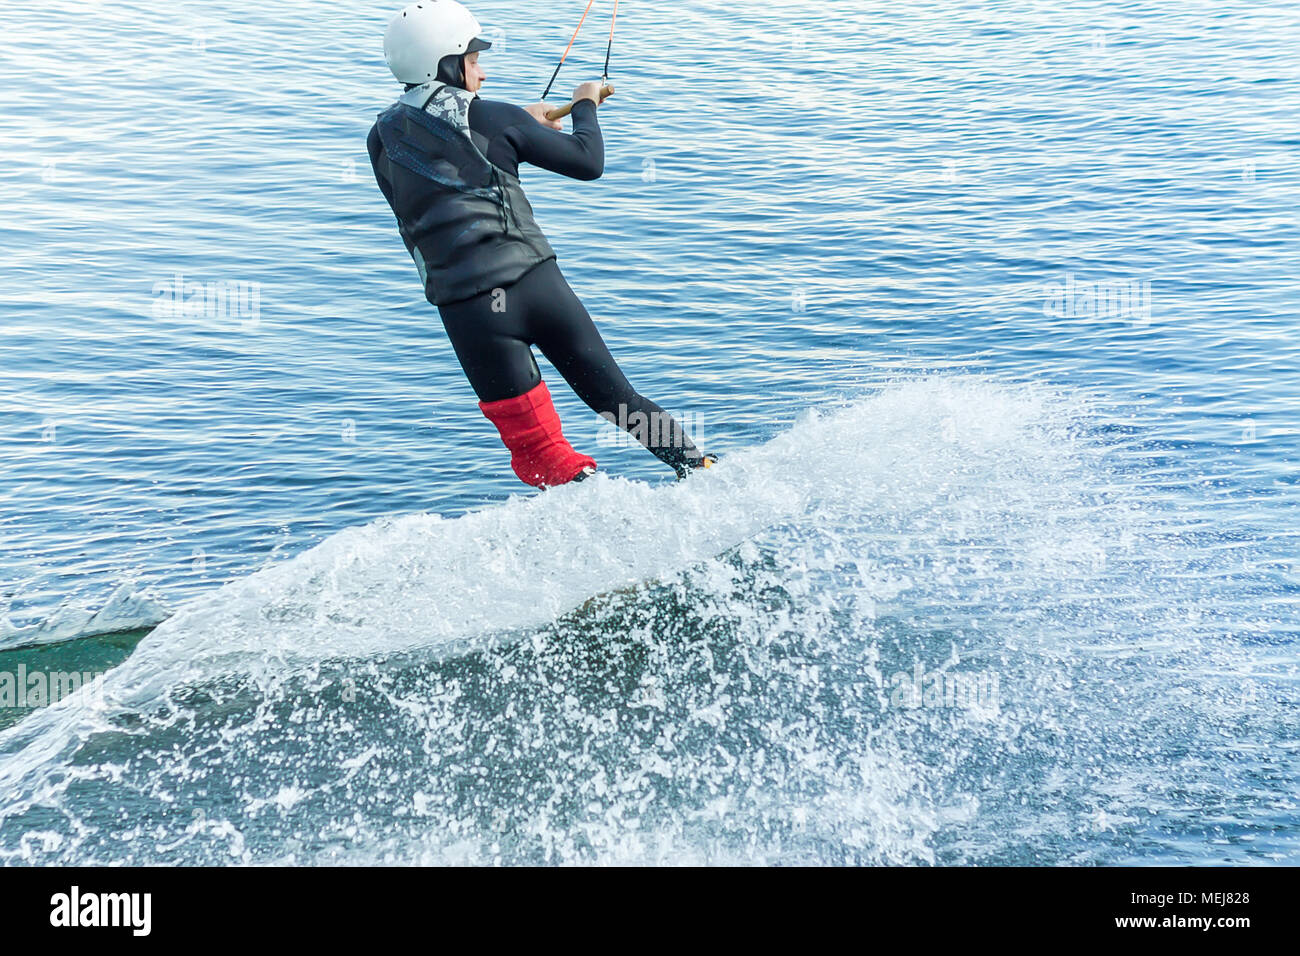 Wakeboarder salta desde un trampolín detrás de una cuerda y hace una ola en el agua. Foto de stock